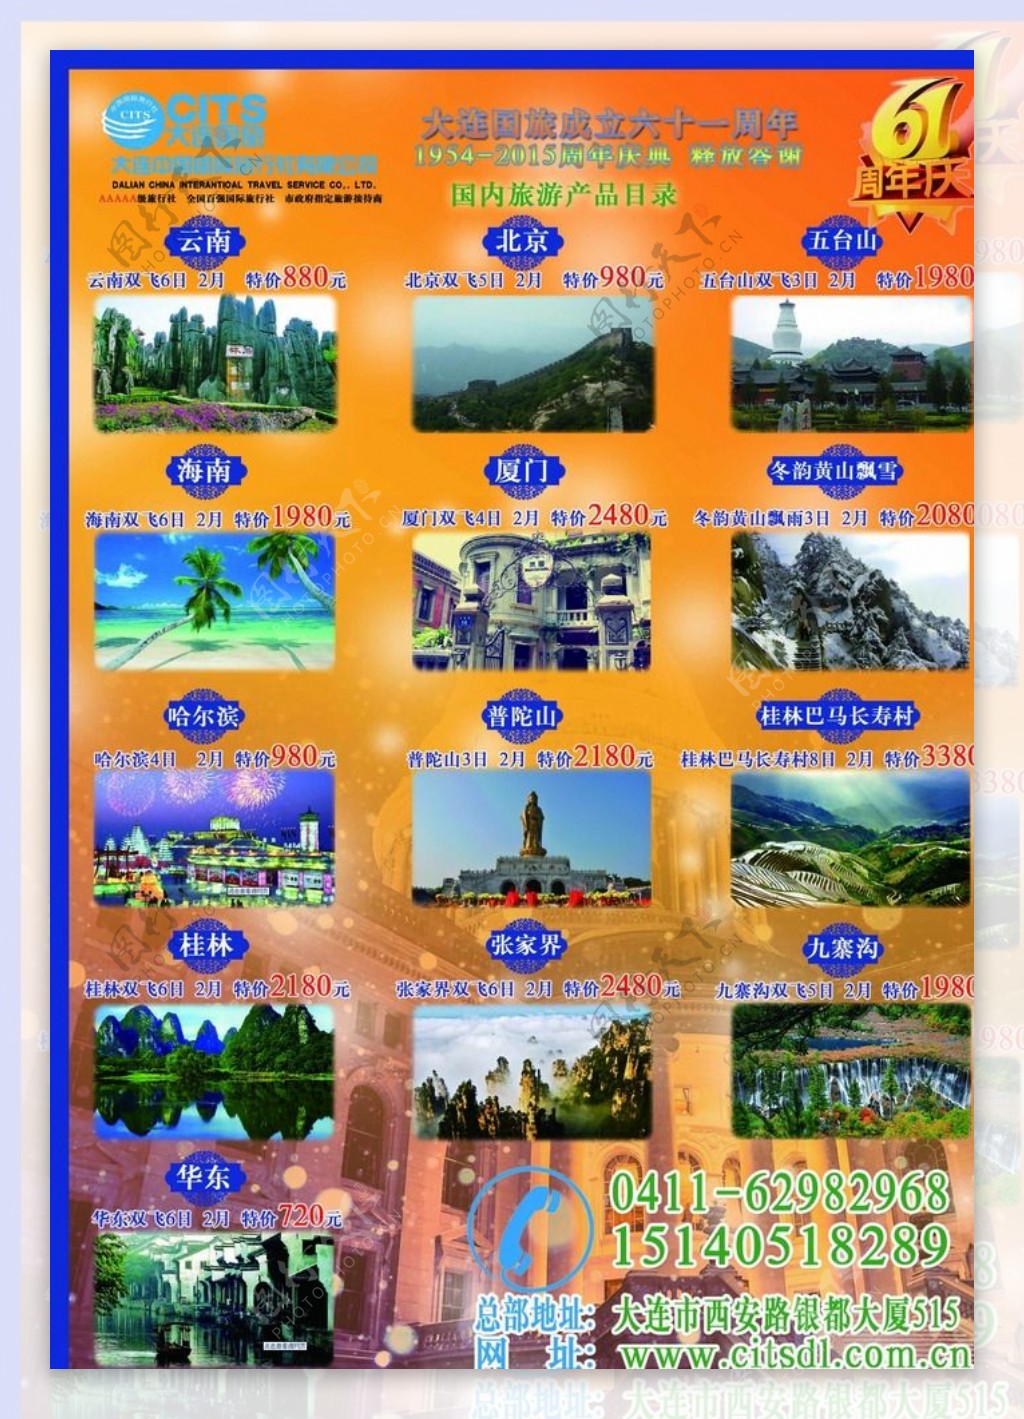 国旅国内旅游宣传单背面图片